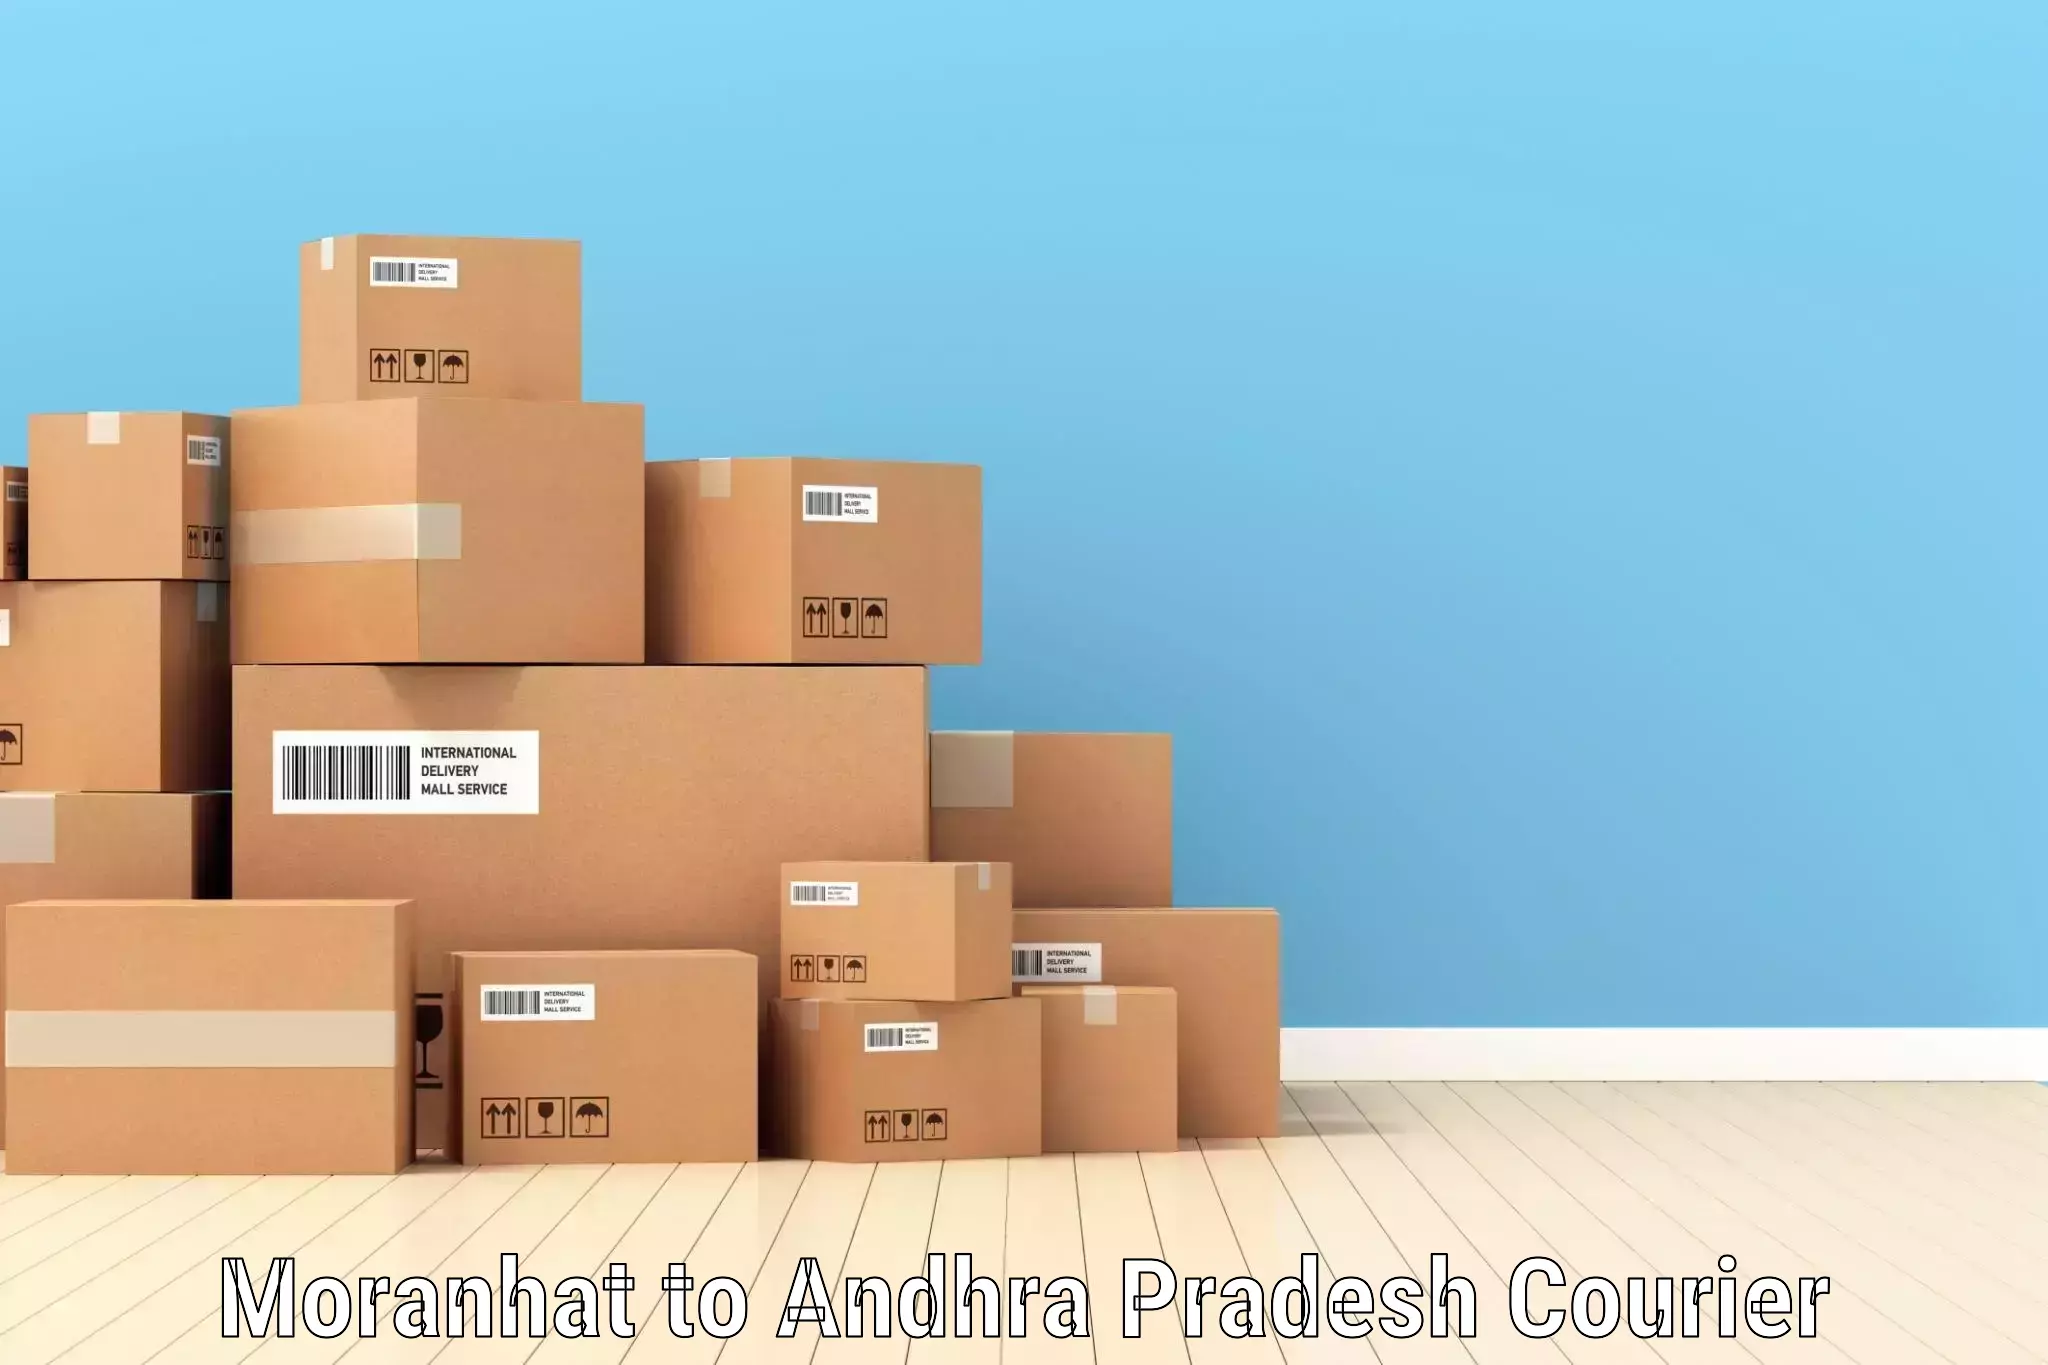 Global logistics network Moranhat to Andhra Pradesh